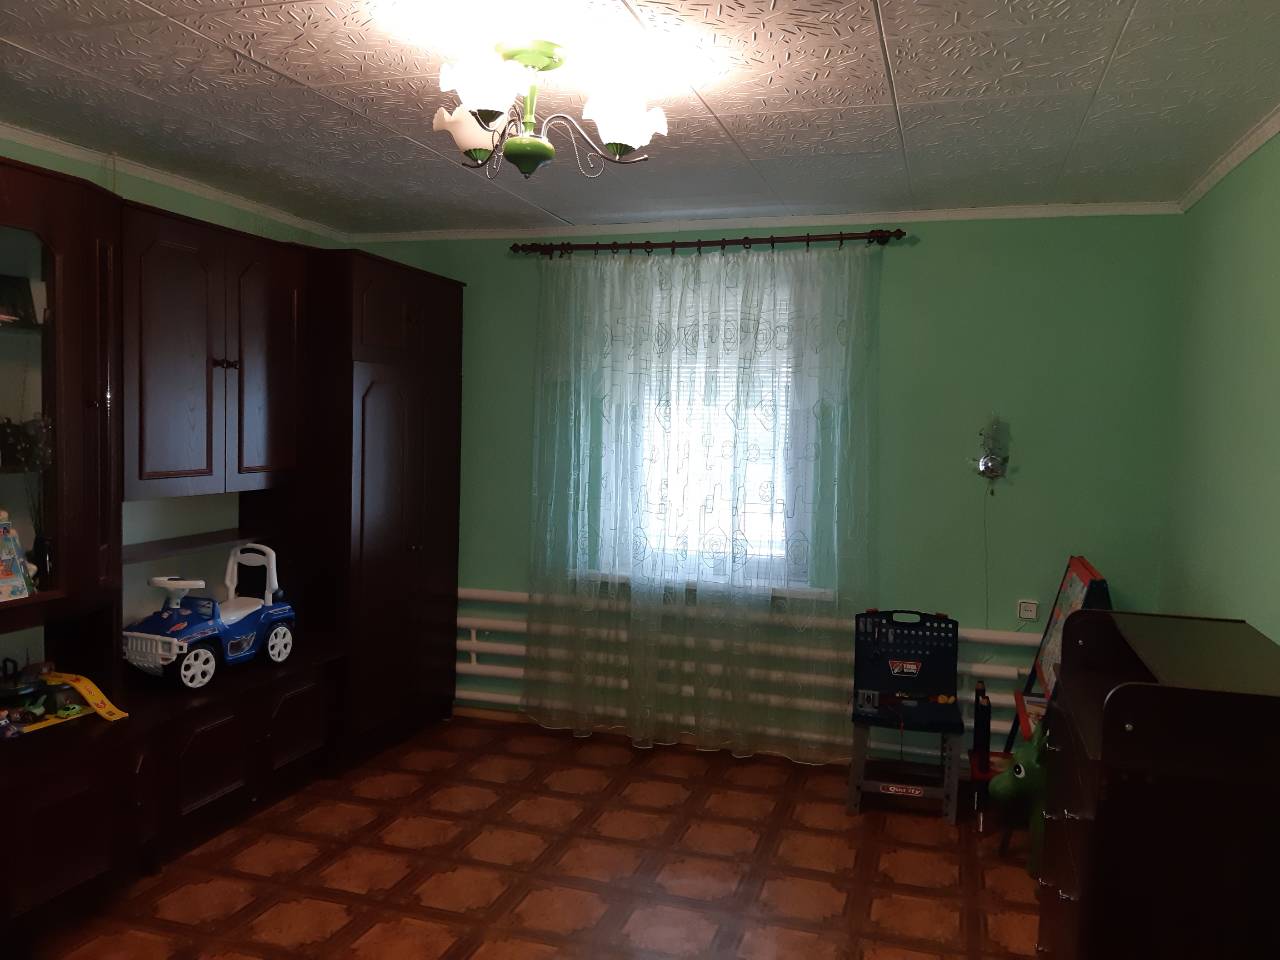 Харьковская область,5 Rooms Rooms,1 BathroomBathrooms,Жилая недвижимость,1105